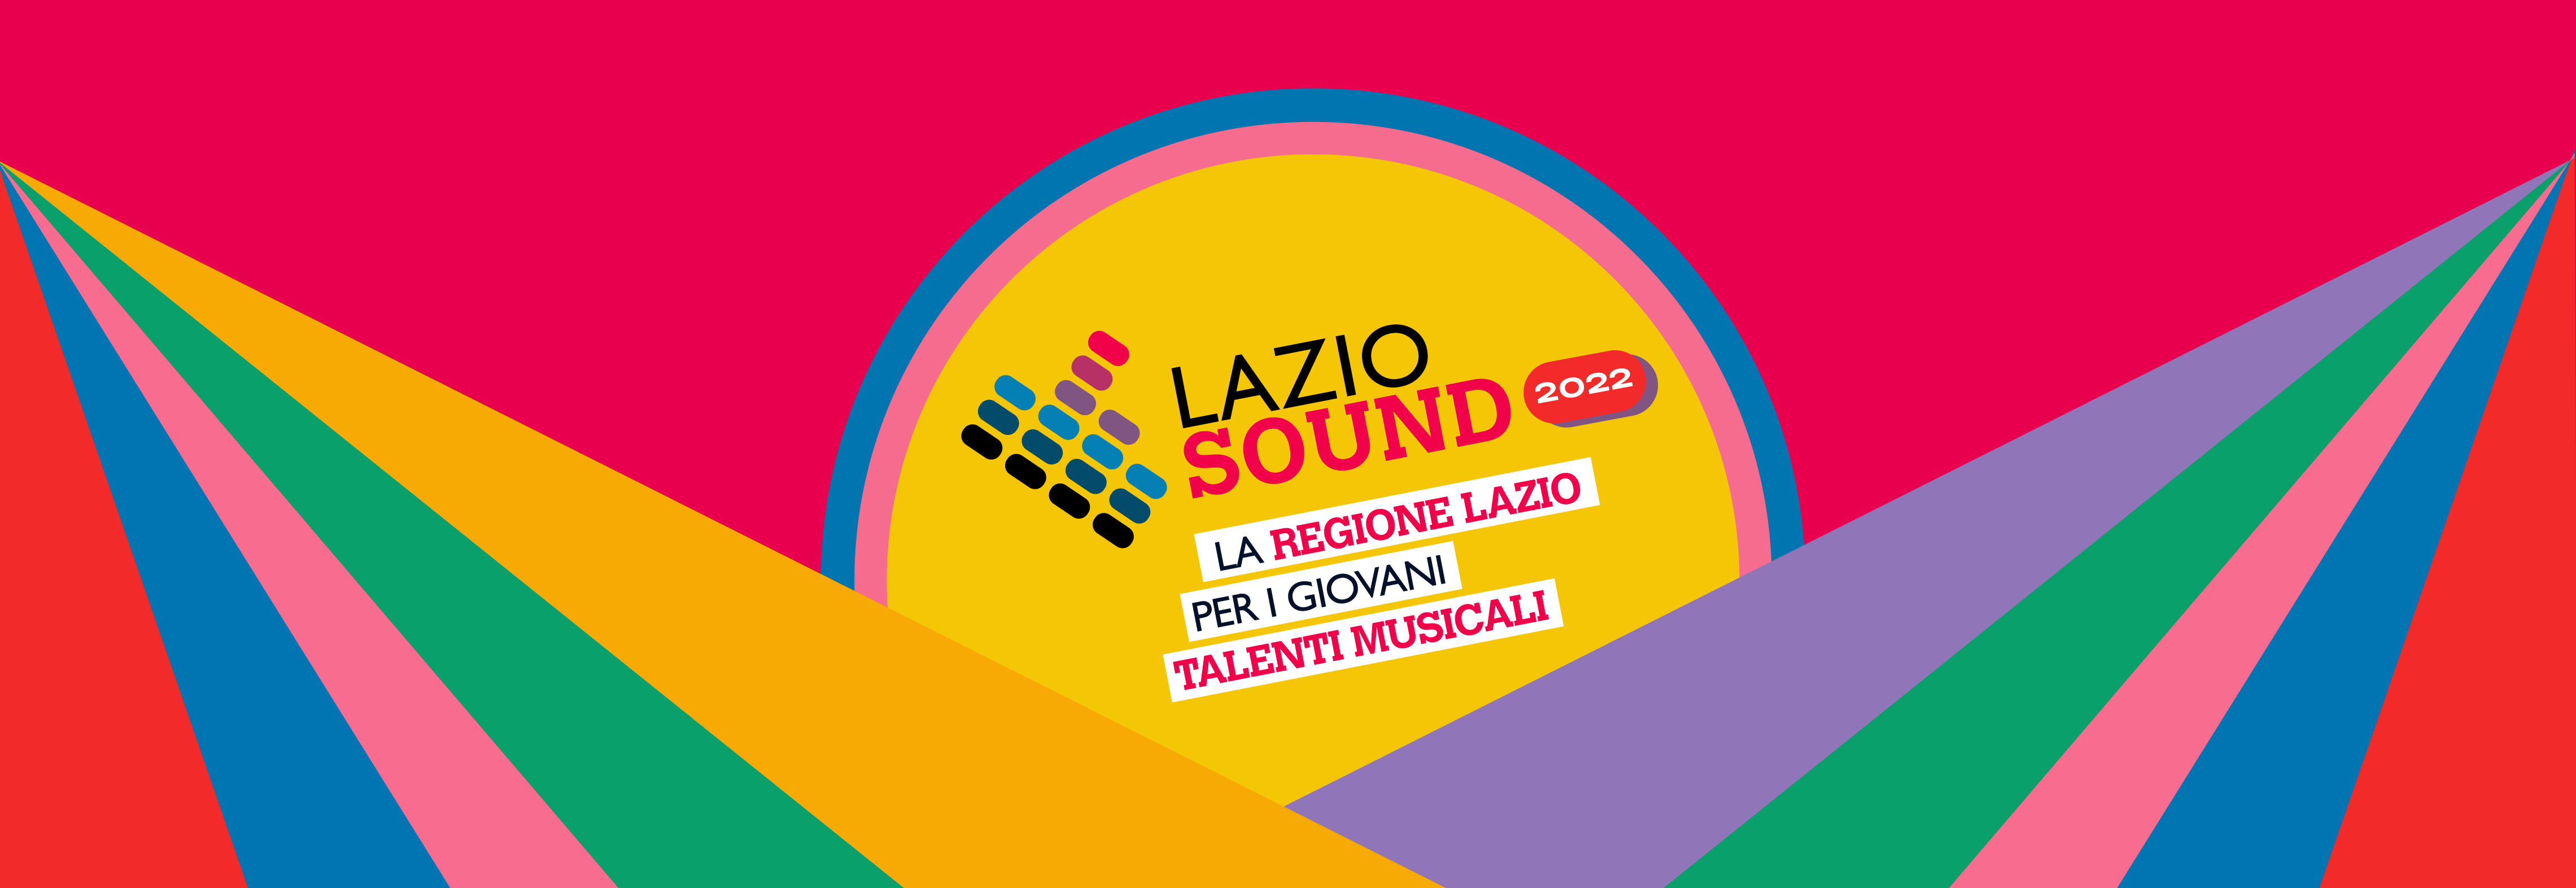 Lazio sound festival